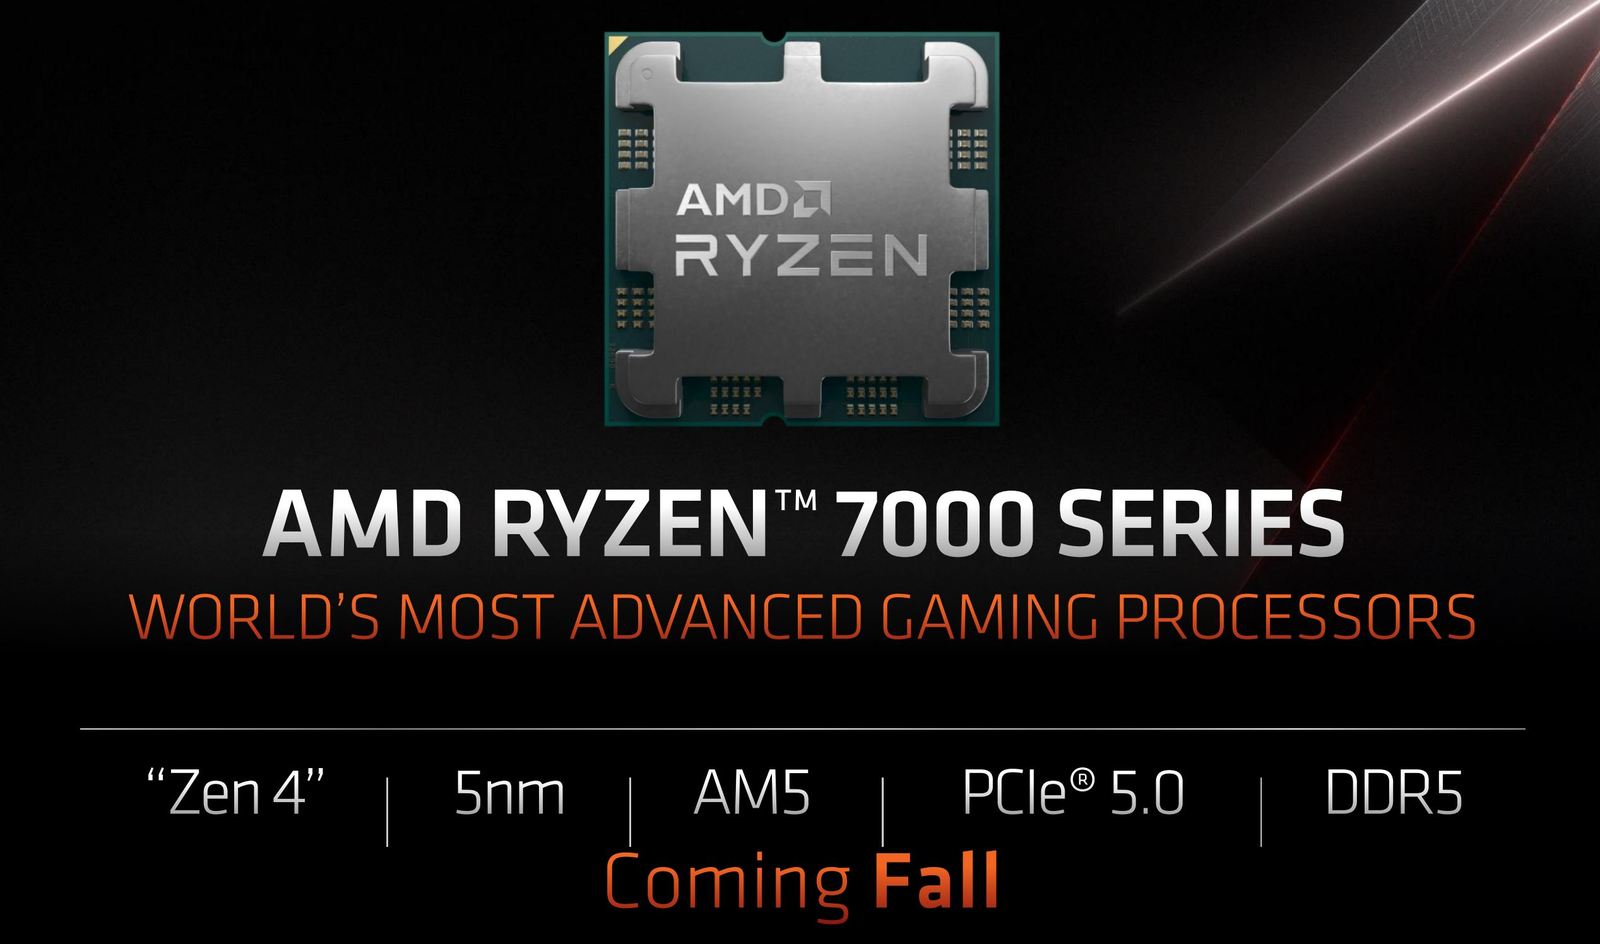 Le specifiche e i prezzi dei processori desktop AMD Ryzen serie 7000 sono trapelati online